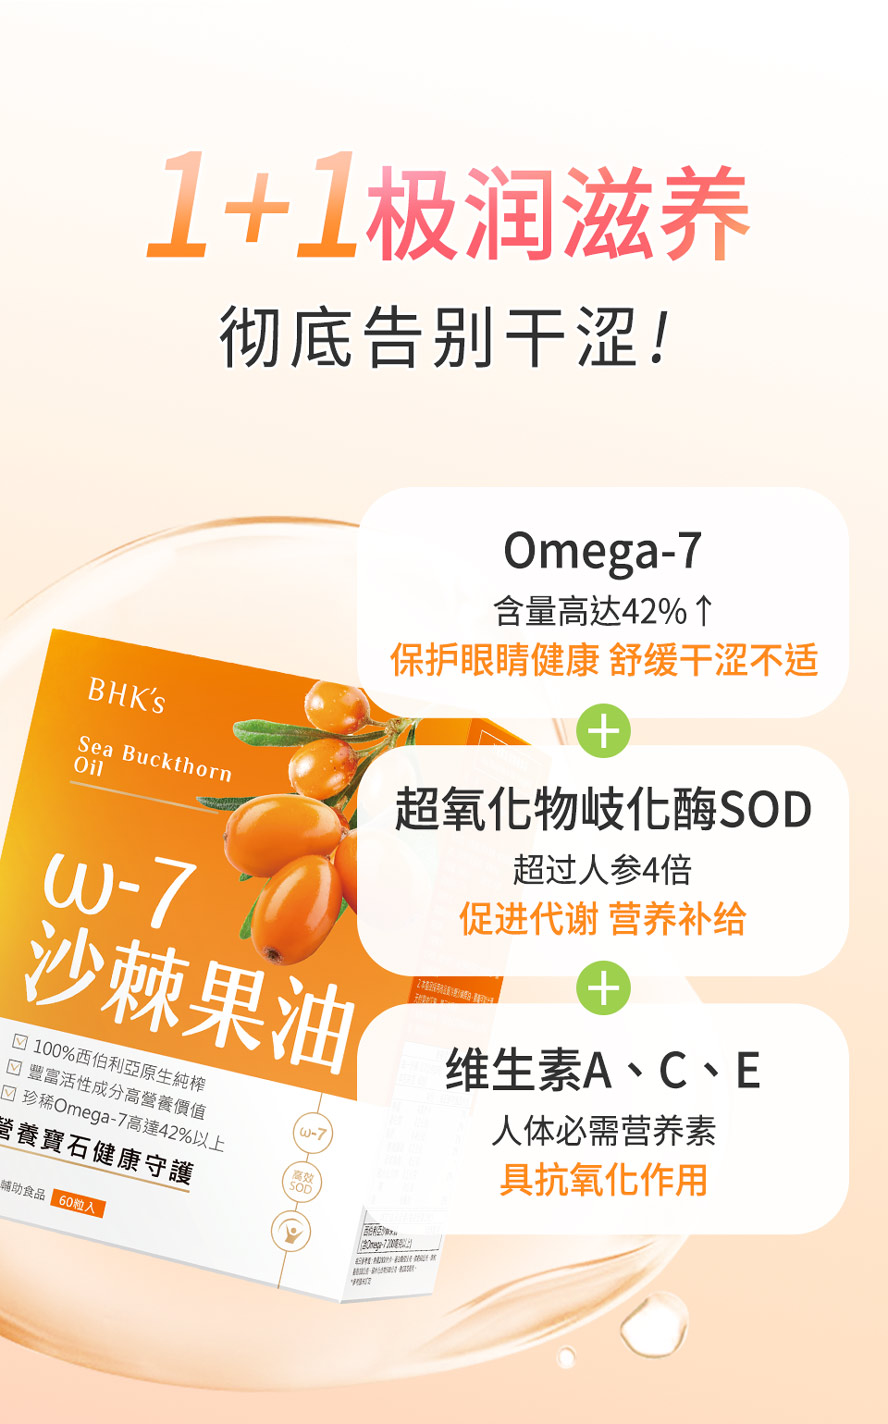 沙棘果油Omega-7有助舒缓滋养，改善干燥、干涩、疲累感。